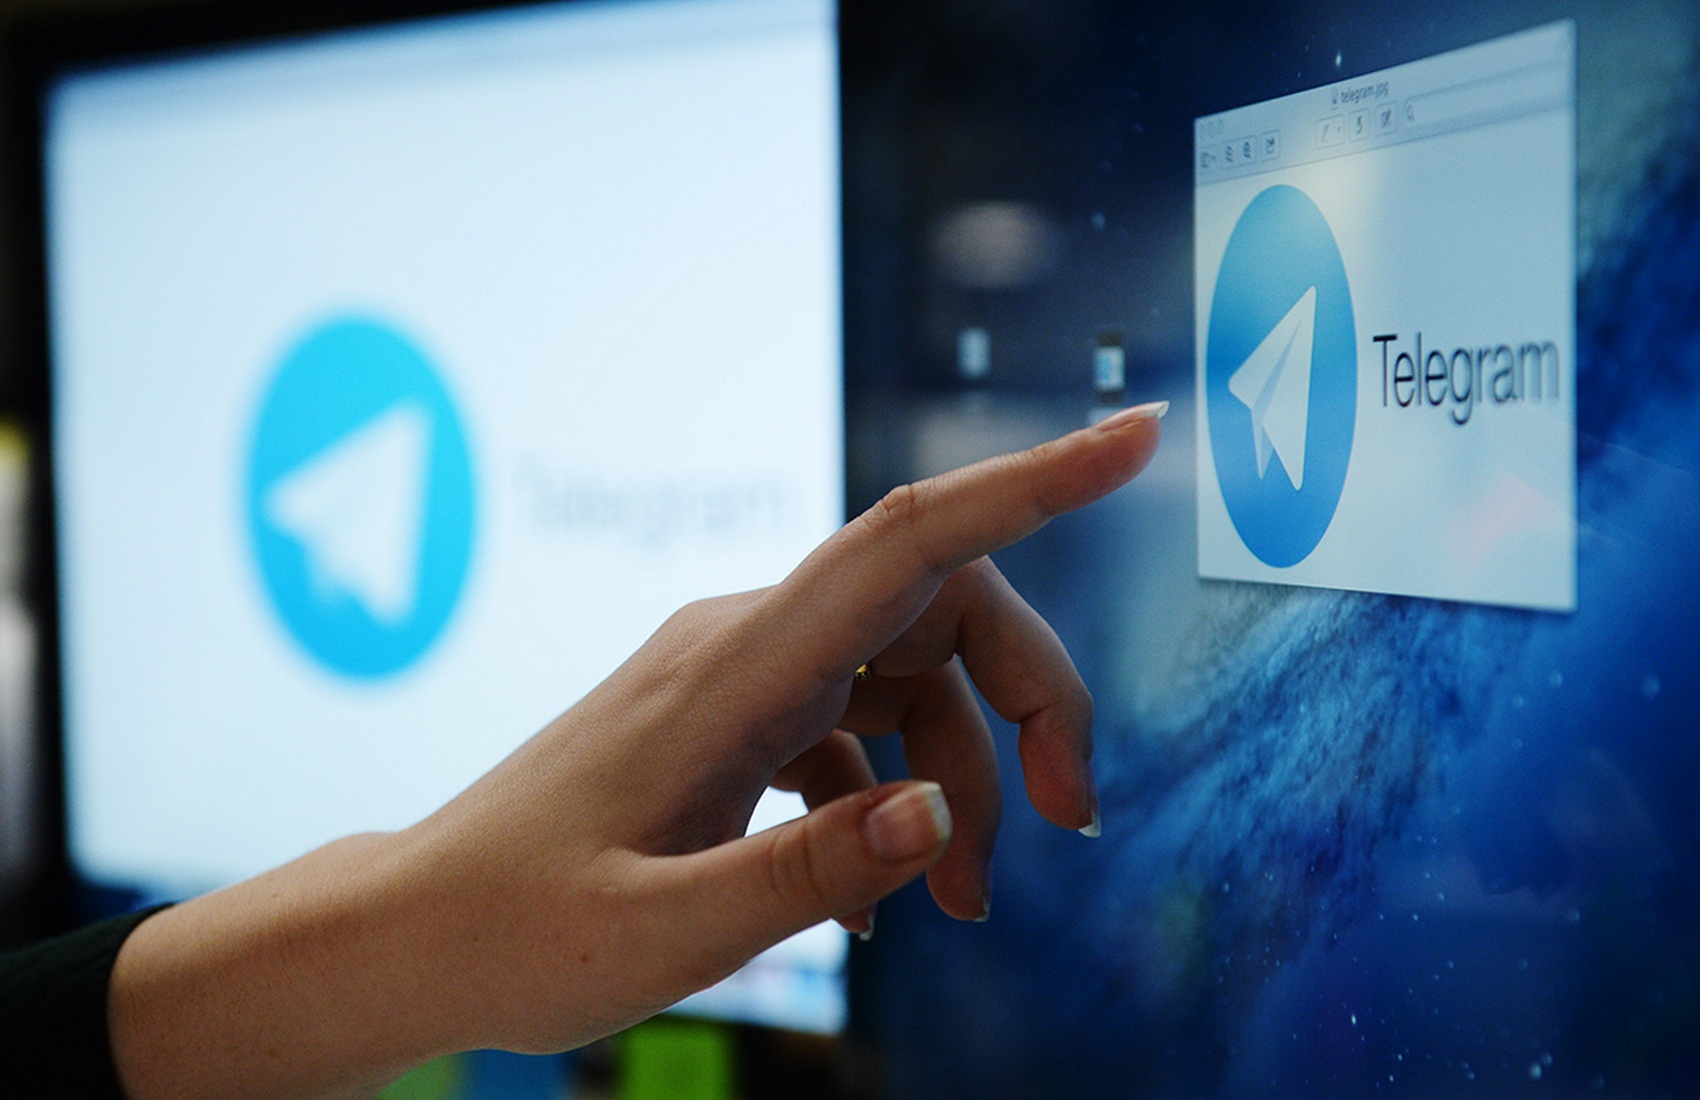 Протягом трьох днів на Telegram підписалися 25 млн нових користувачів